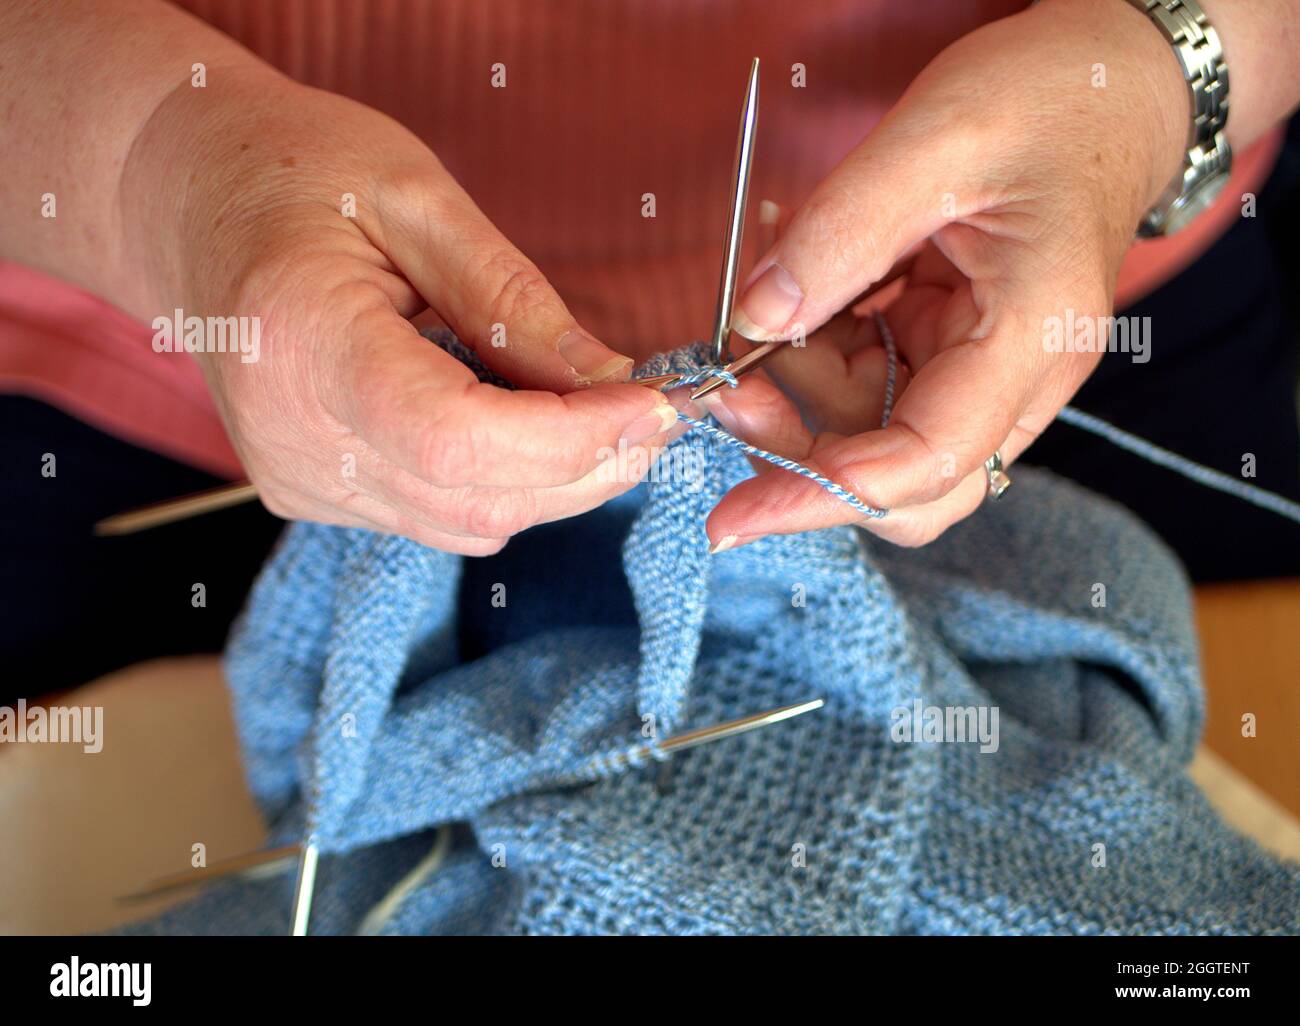 Istantanea di lavorare a maglia un maglione te stesso Foto Stock